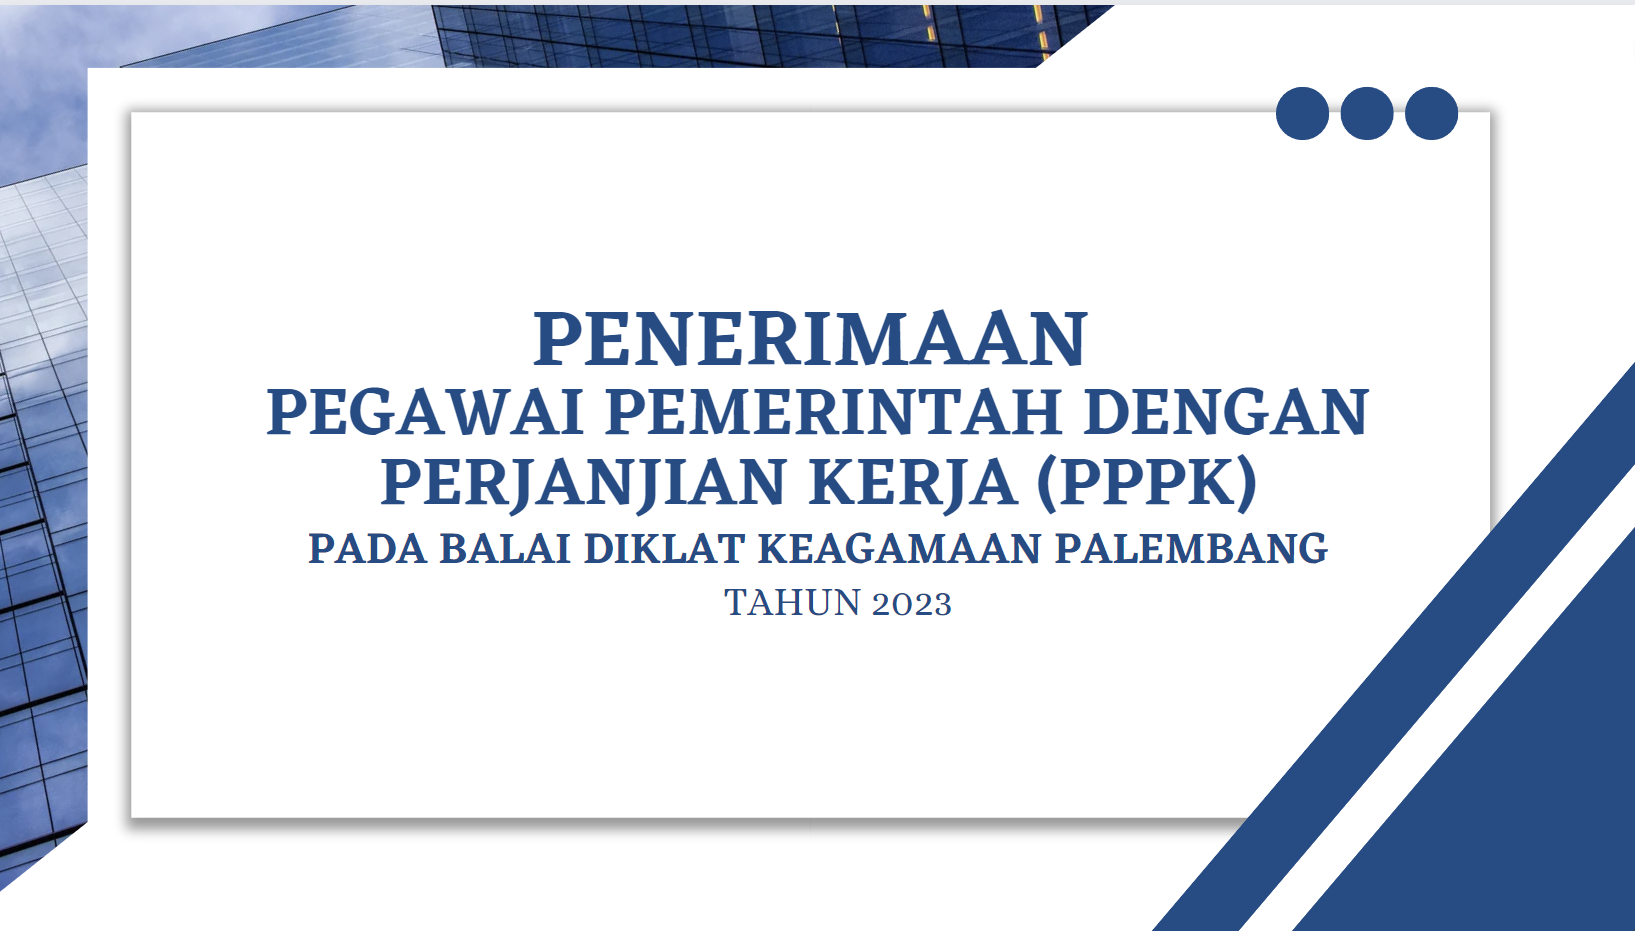 BDK Palembang Kembali Membuka Penerimaan PPPK Tahun 2023